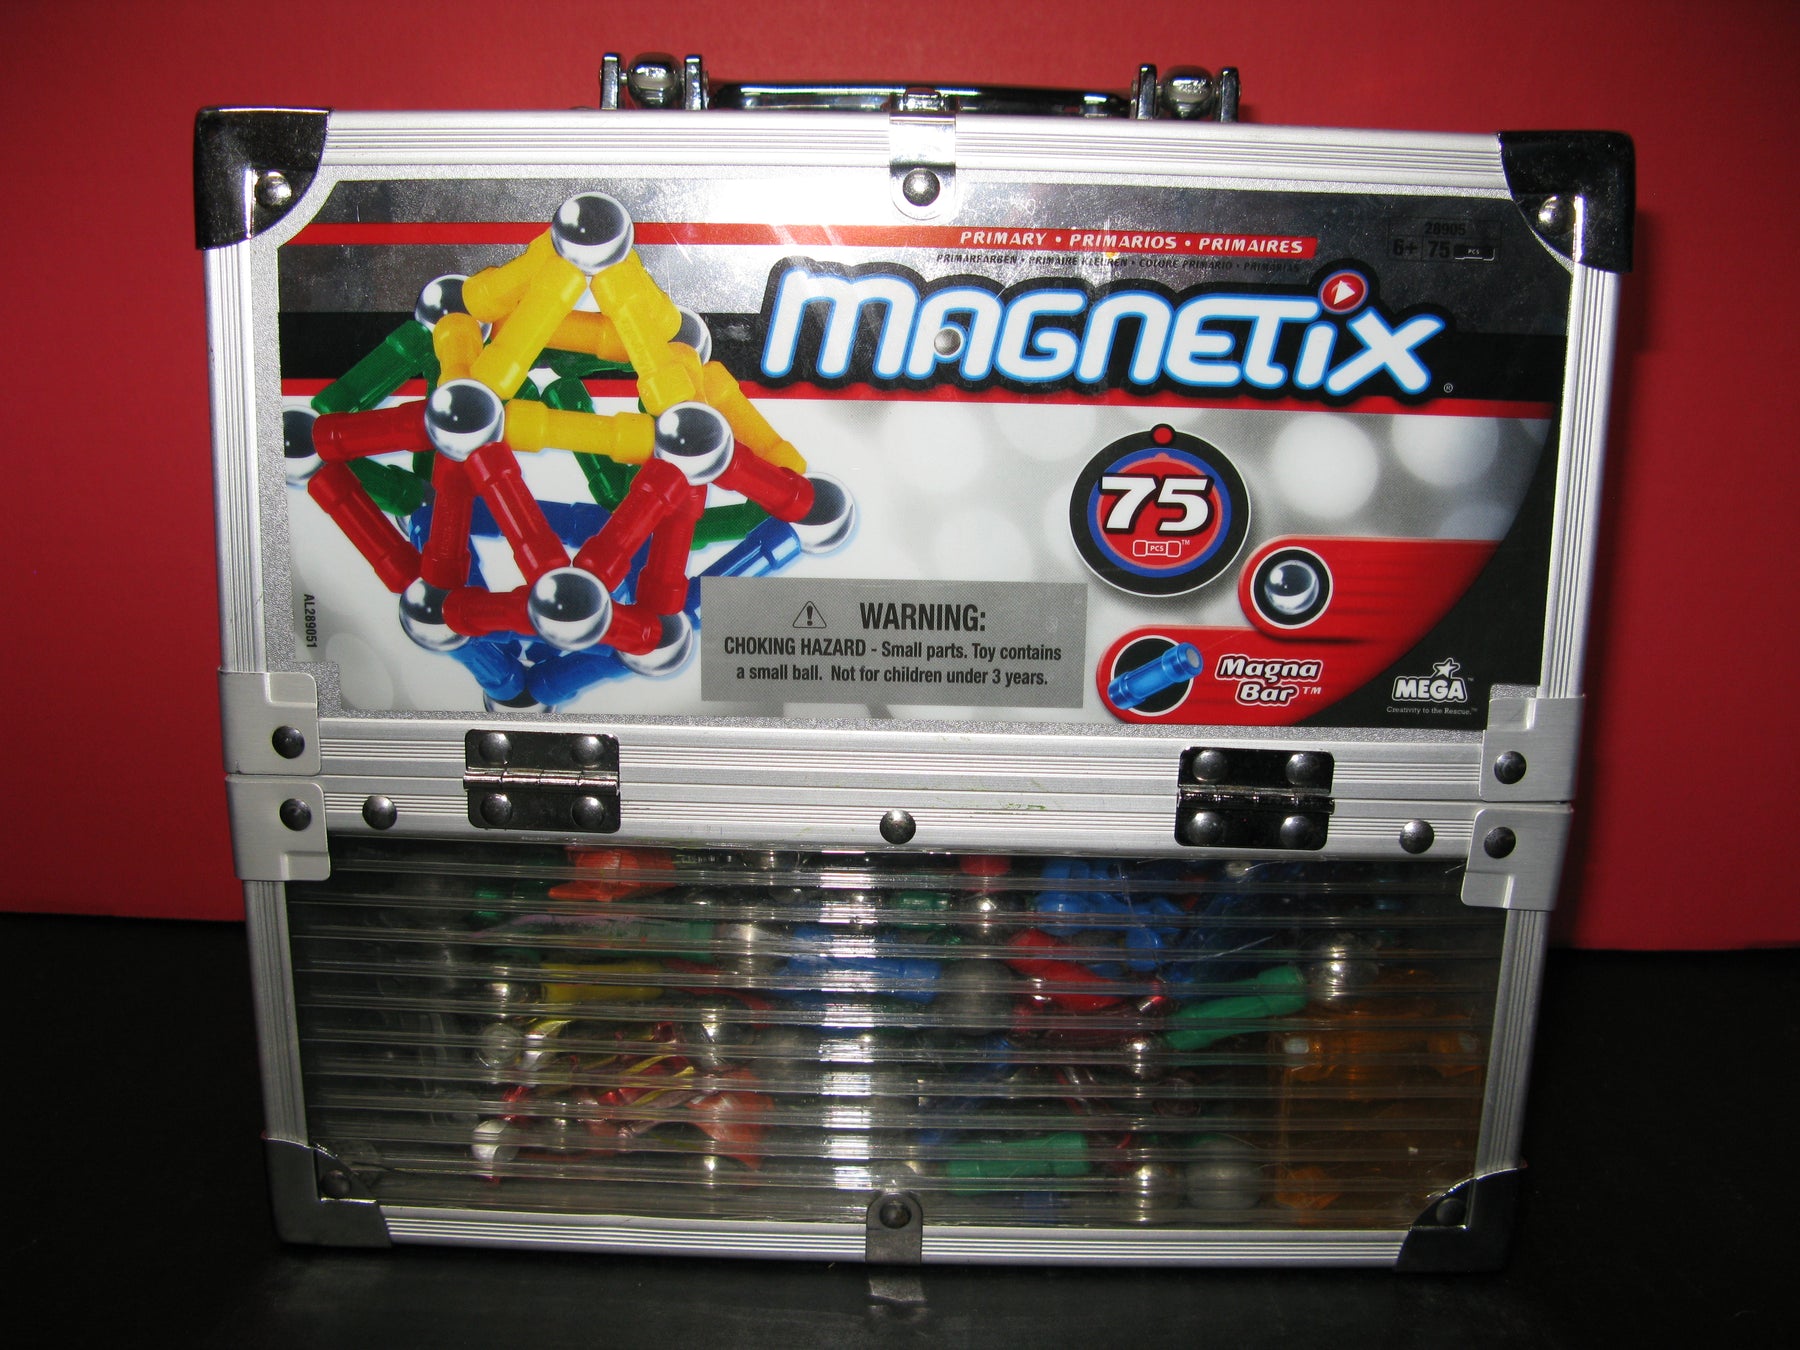 Magnetix Magna Bars by Mega